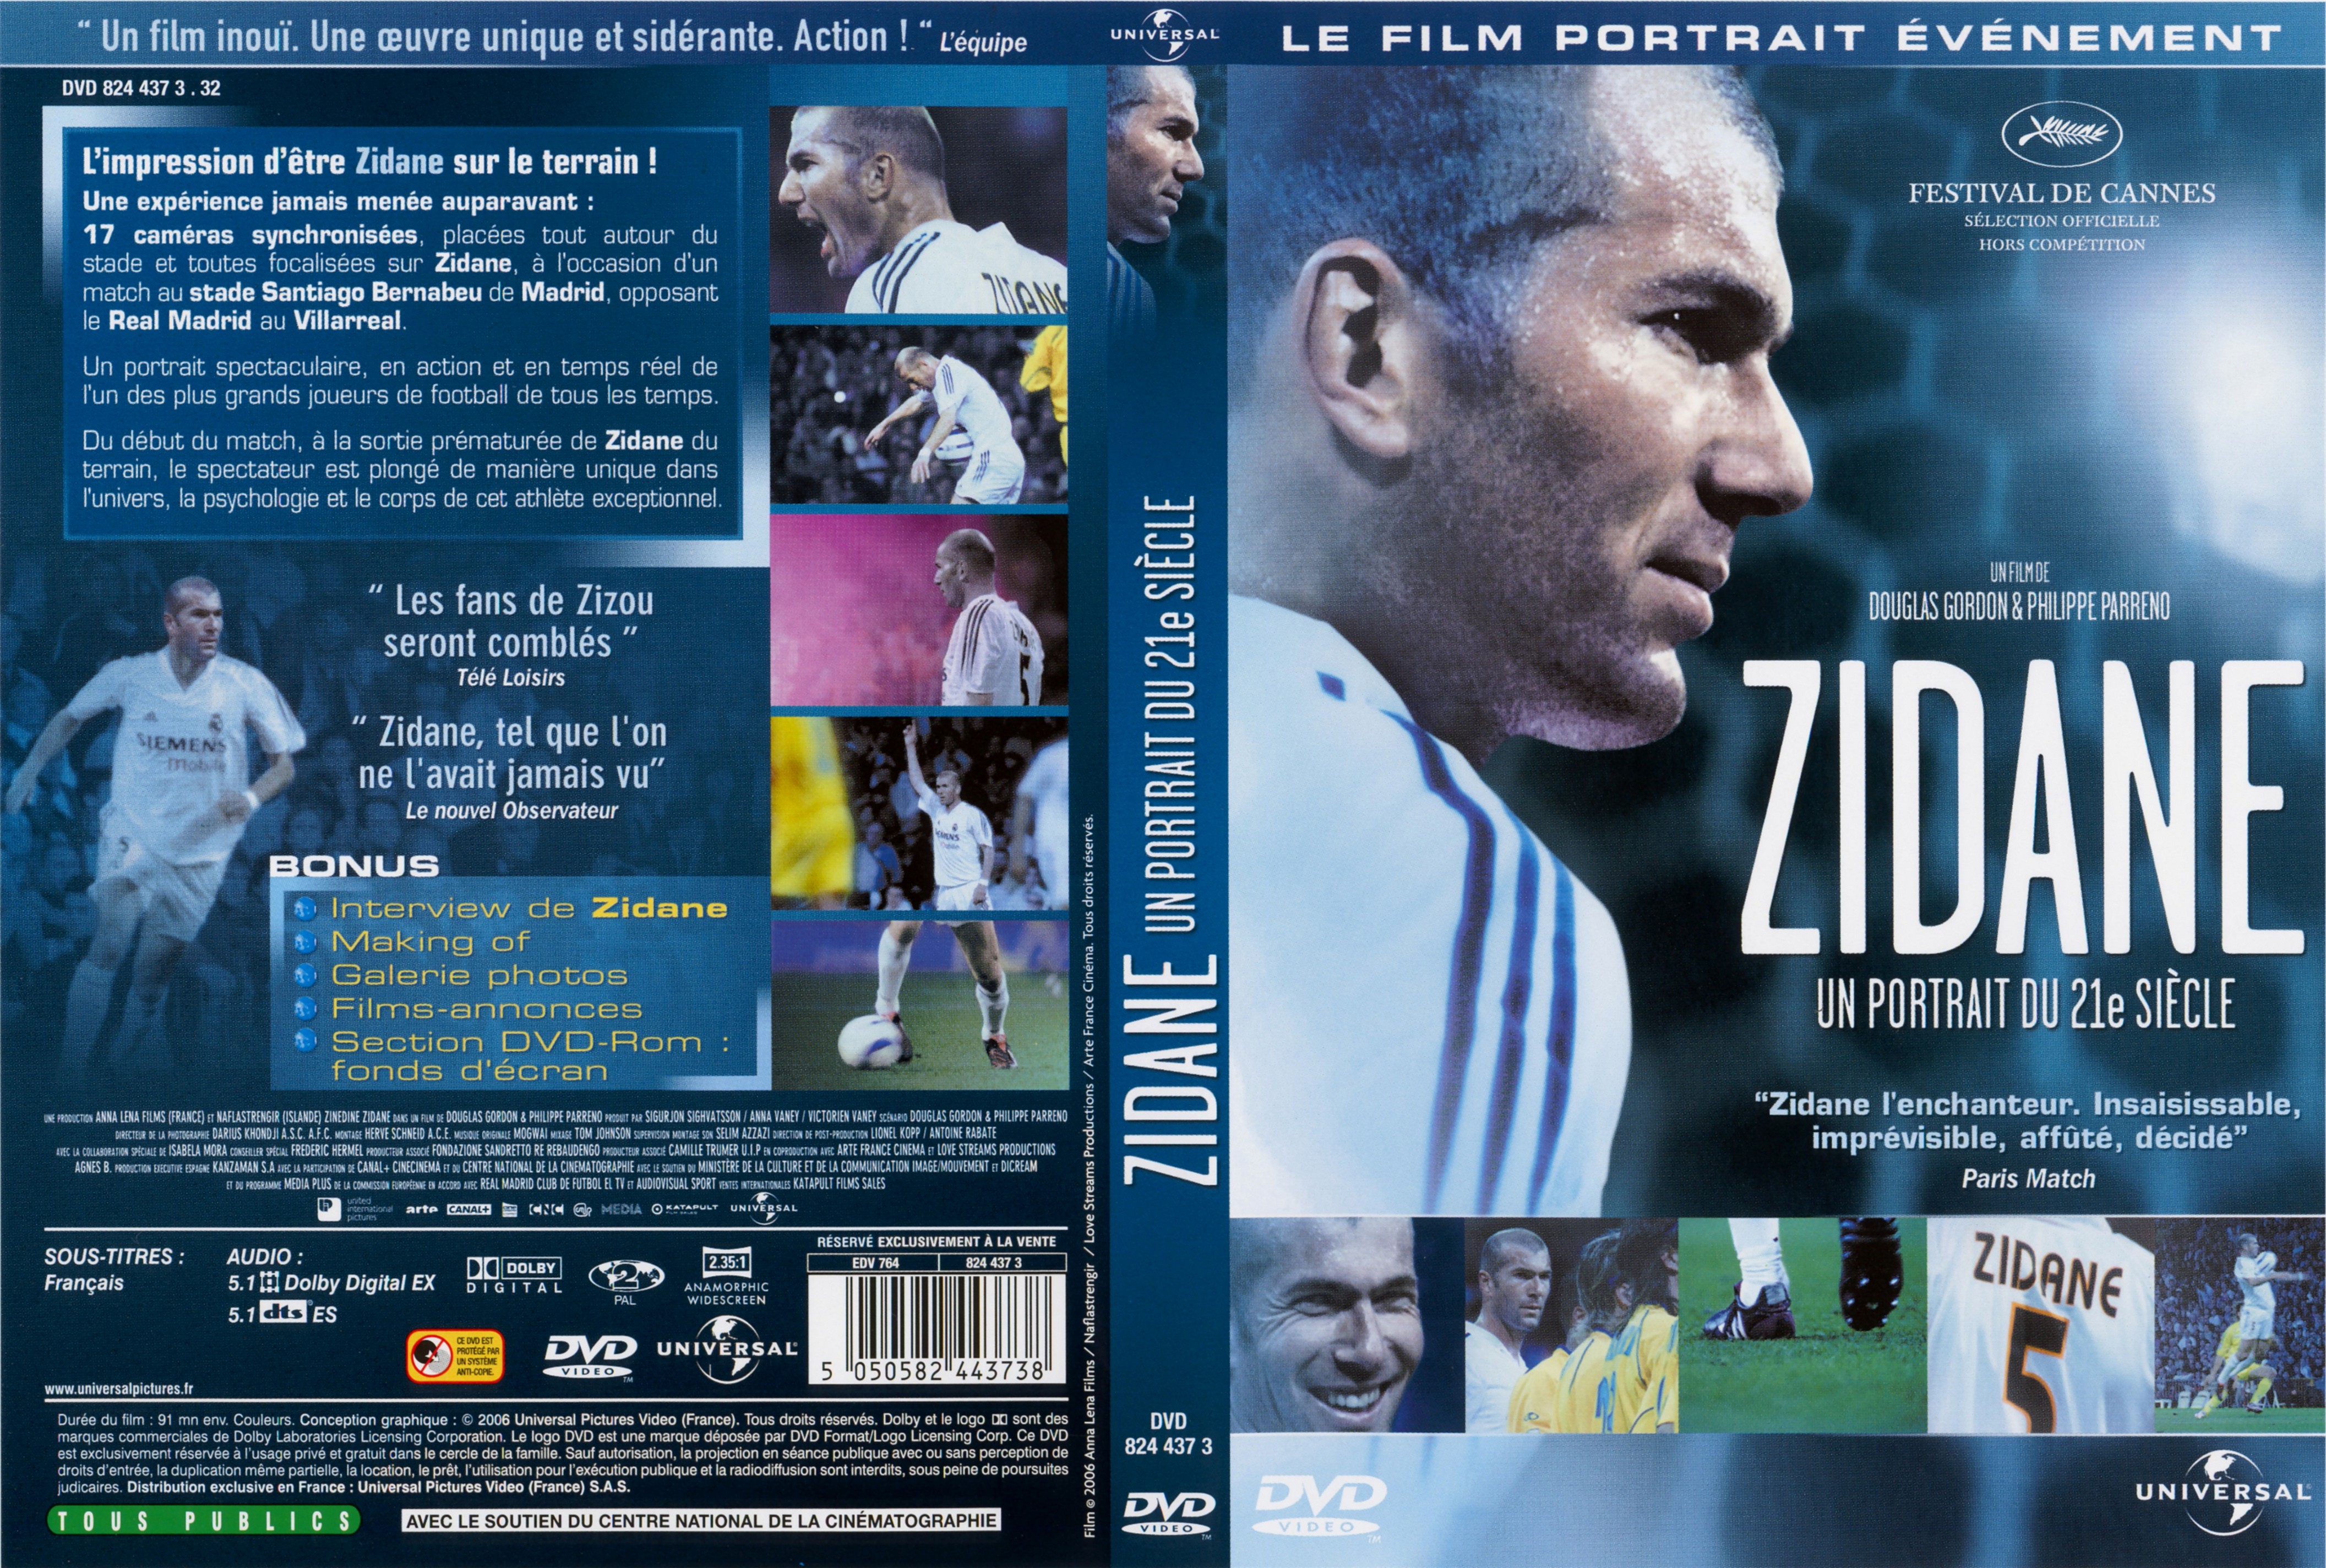 Jaquette DVD Zidane un portrait du XXIeme siecle v2